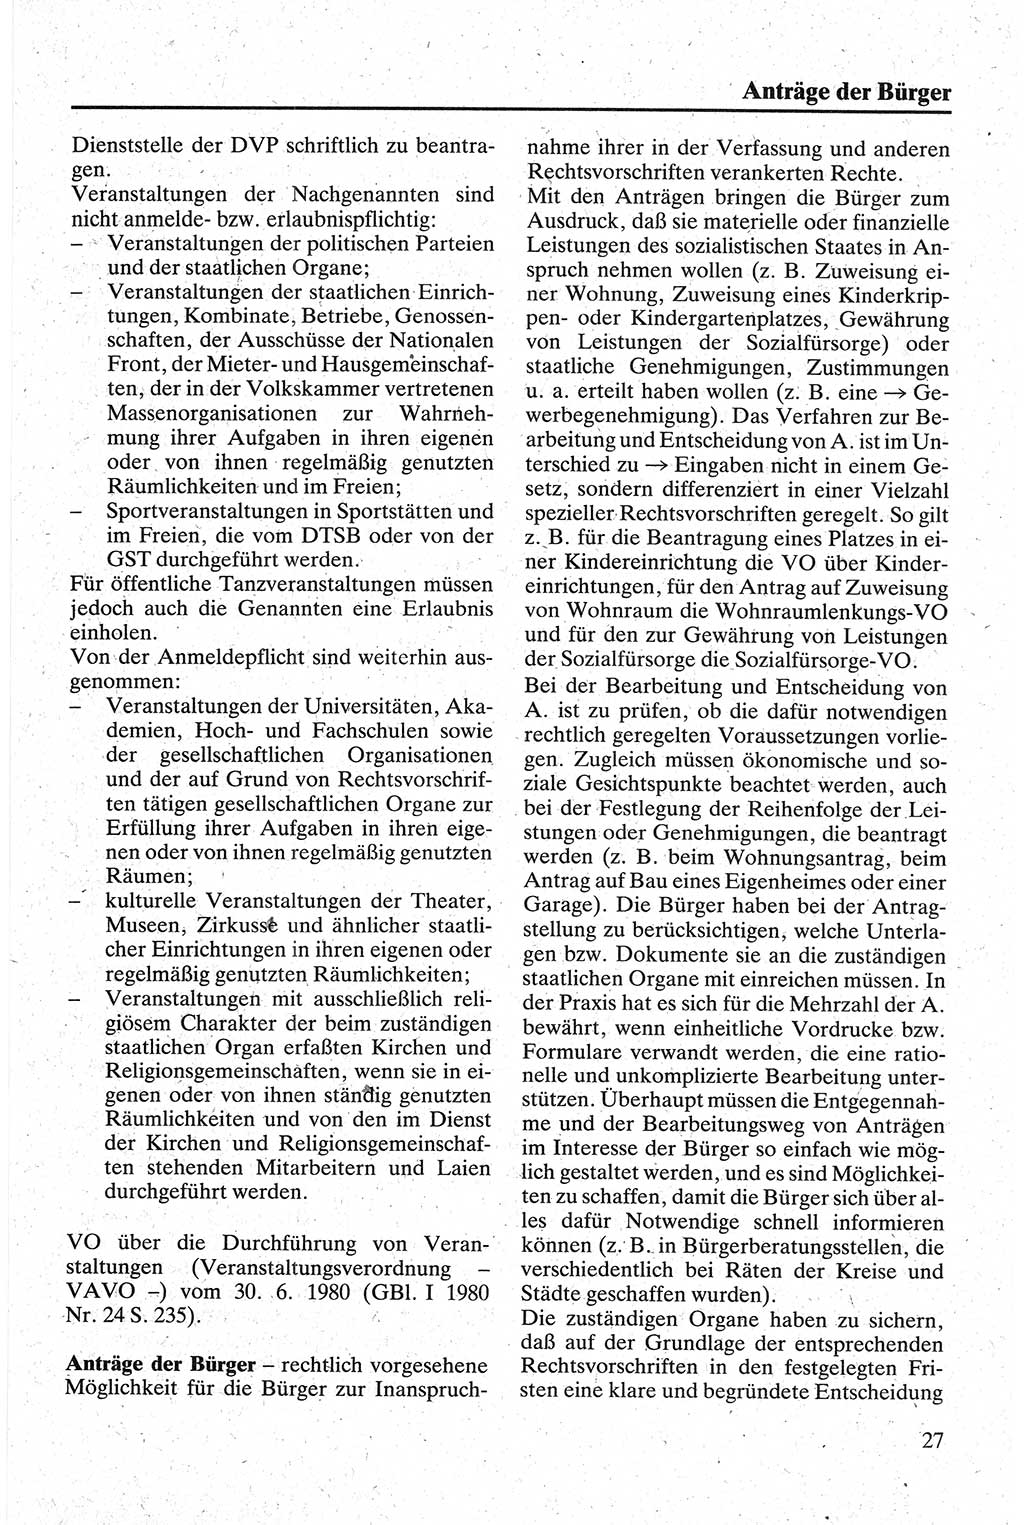 Handbuch für den Abgeordneten [Deutsche Demokratische Republik (DDR)] 1984, Seite 27 (Hb. Abg. DDR 1984, S. 27)